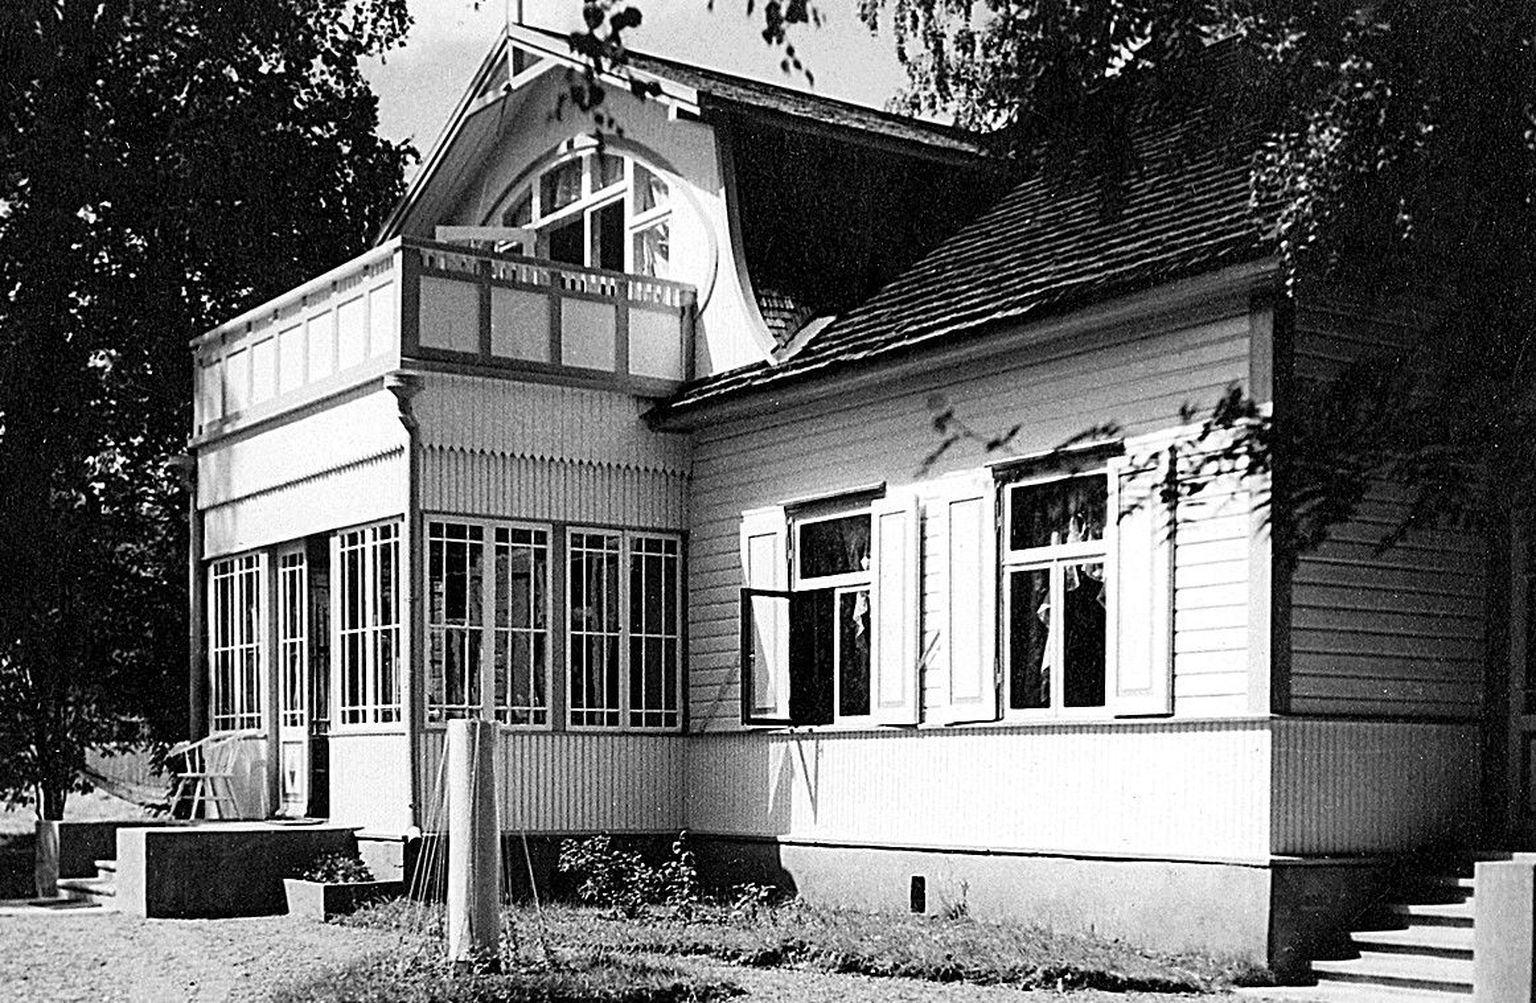 Kaunis kaptenivilla
Lainela/Tiidemanni
Aaspere mõis, Haljala kihelkond
Ehitusaeg 1910